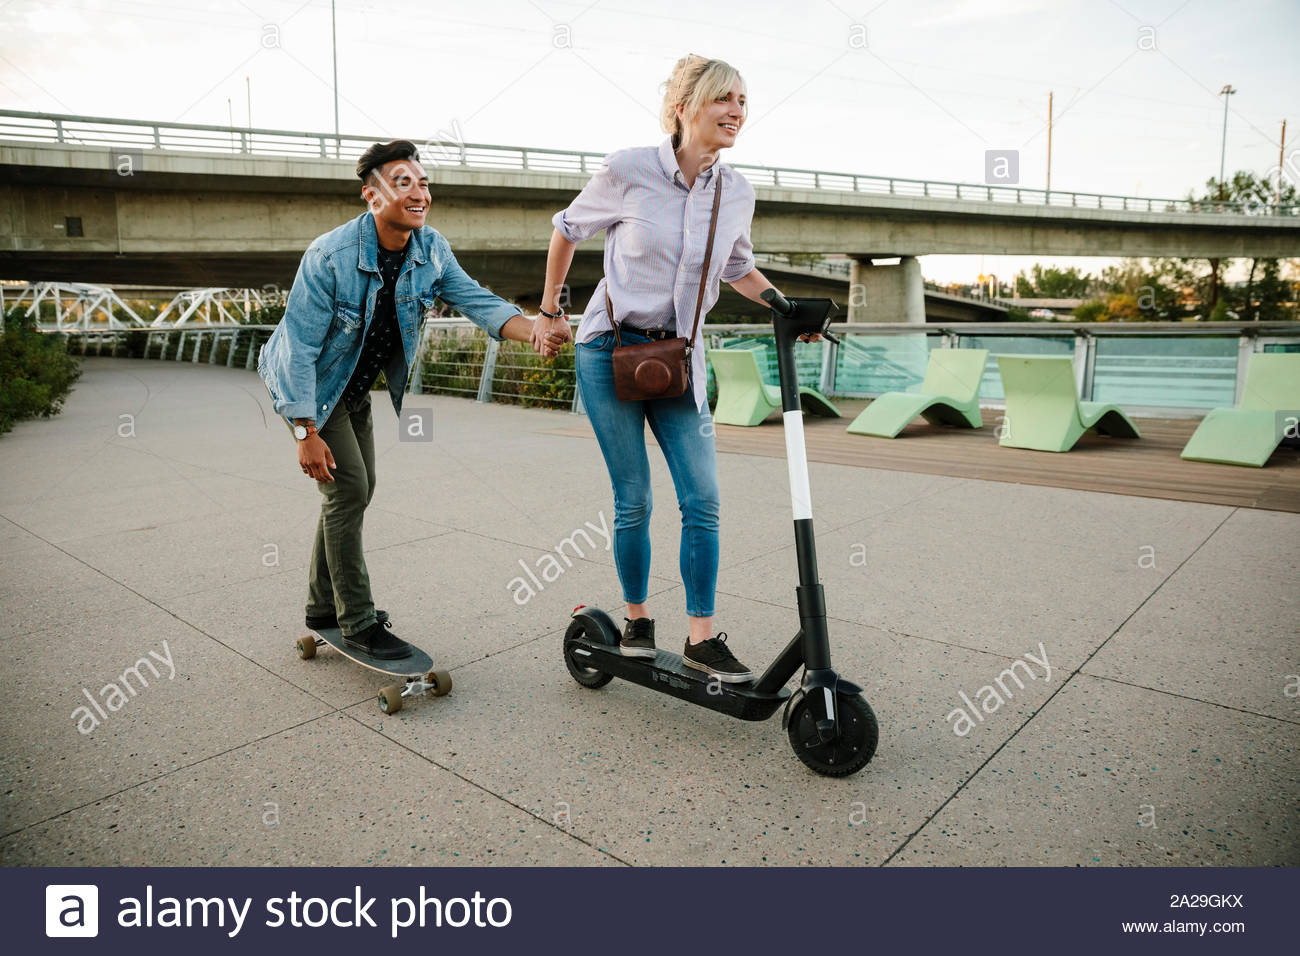 Playful young couple riding scooter et roulettes sur trottoir urbain Banque D'Images